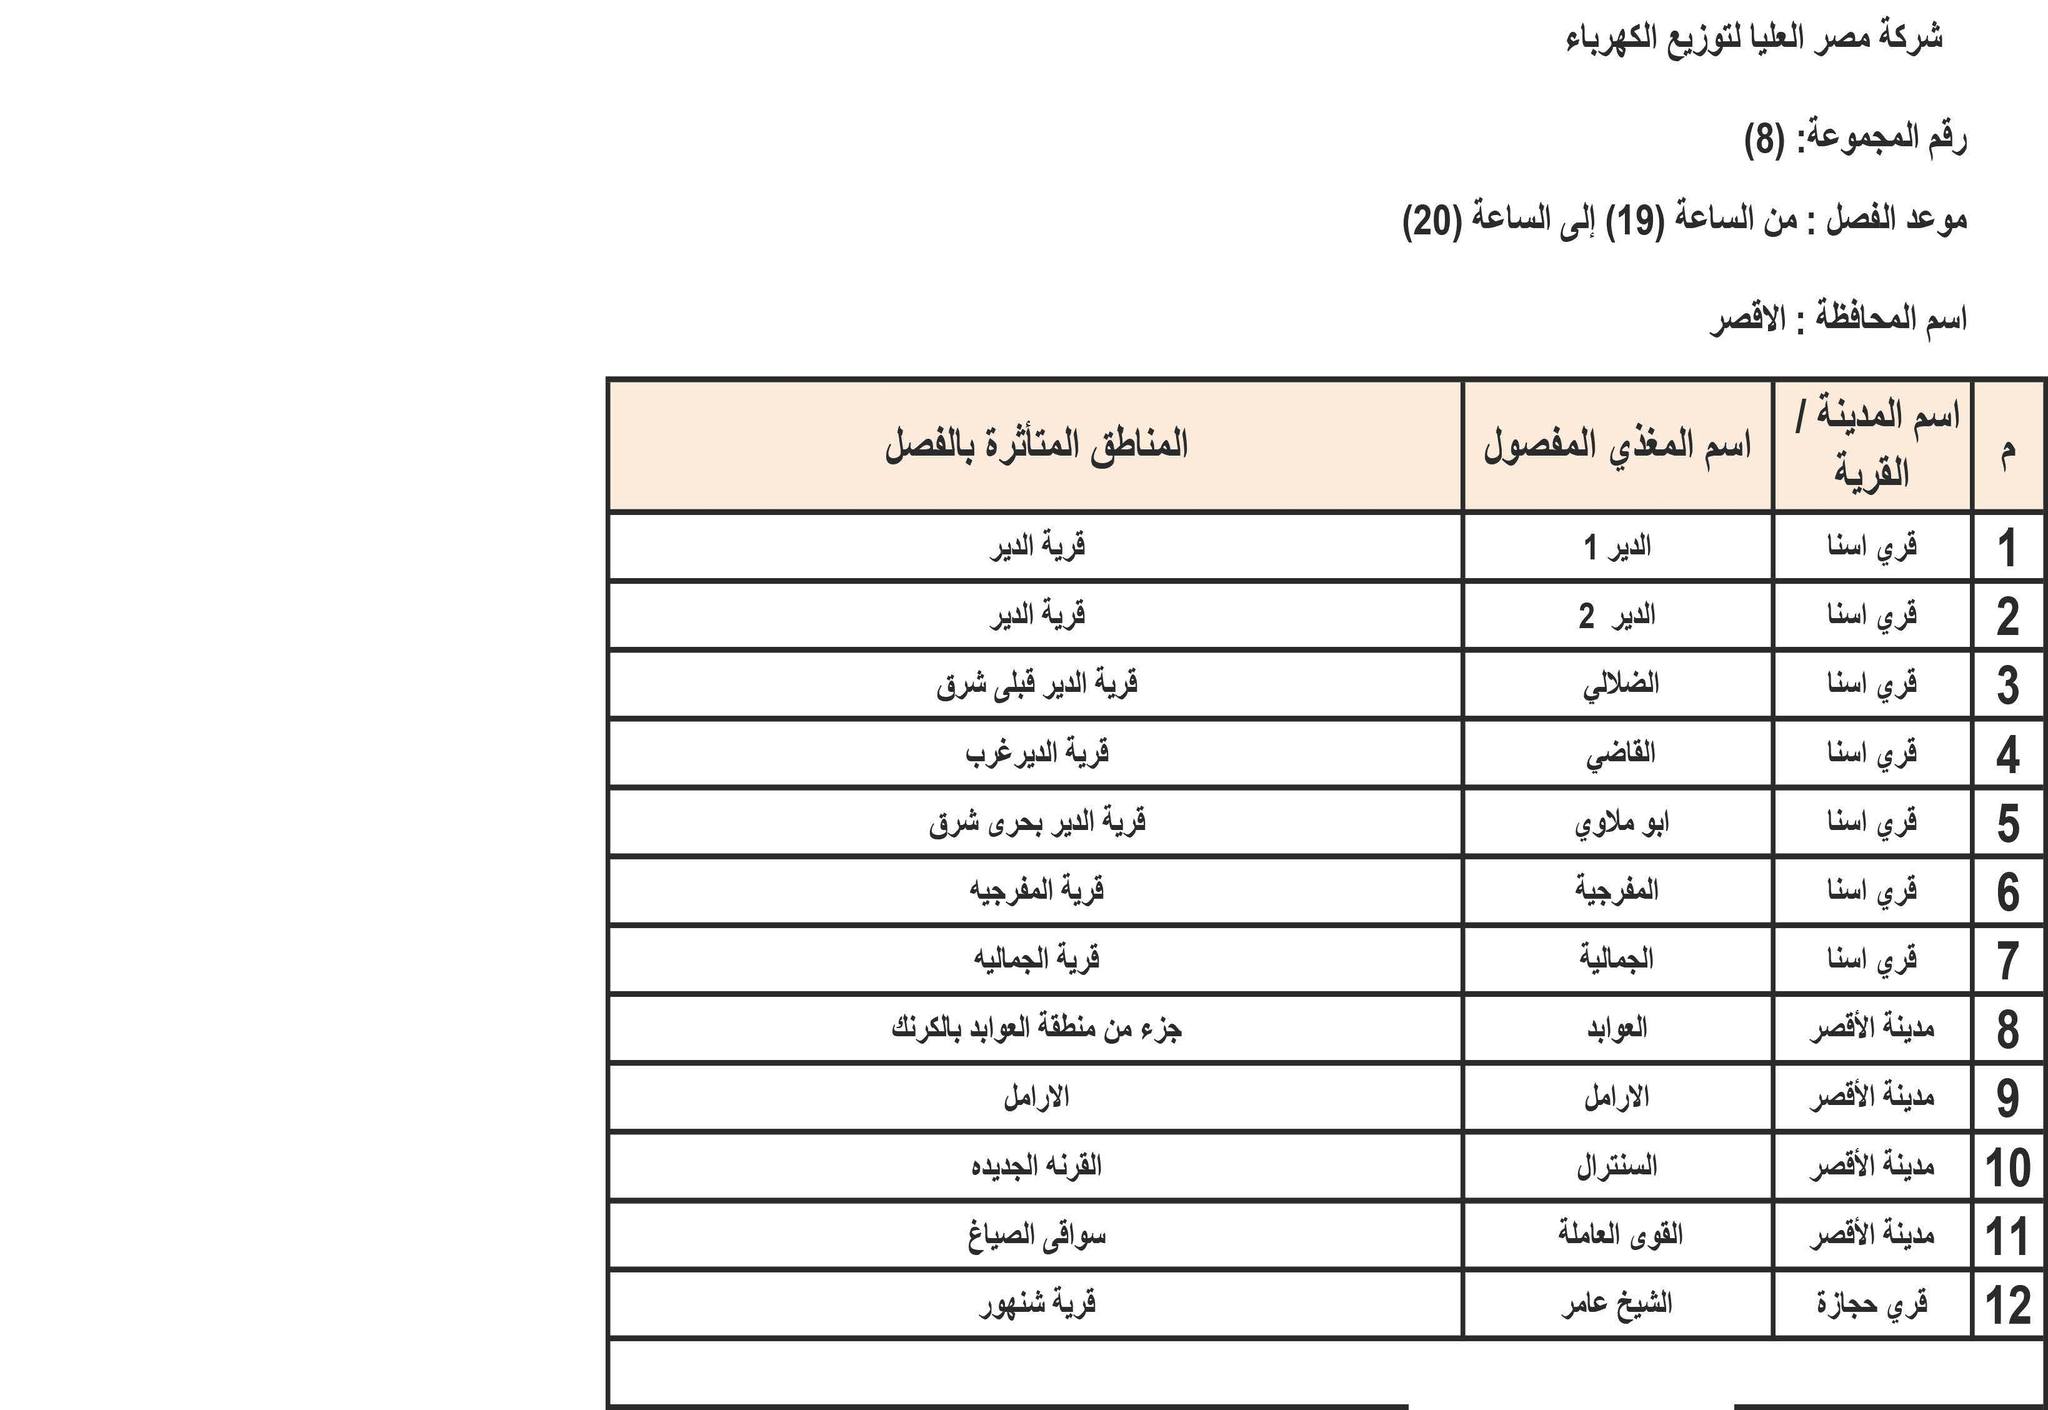 الإعلان عن خطة تخفيف أحمال الكهرباء في محافظة الأقصر 6